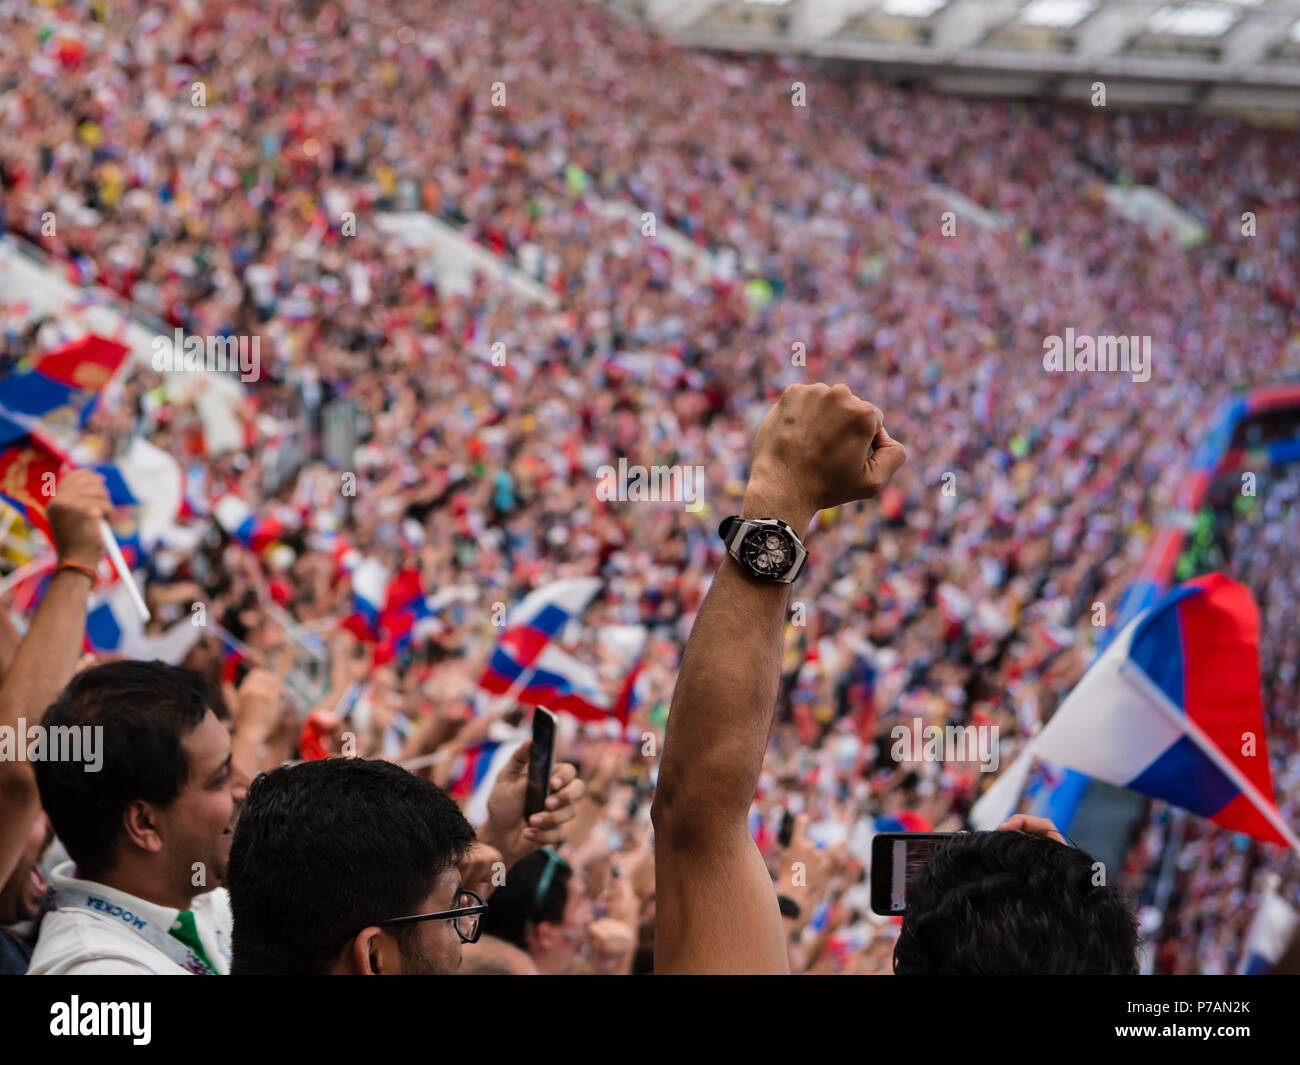 Moskau, Russland - Juli 01, 2018: FIFA WM 2018, Fußball Fans beim Spiel Russia-Spain in Runde 16. Stockfoto